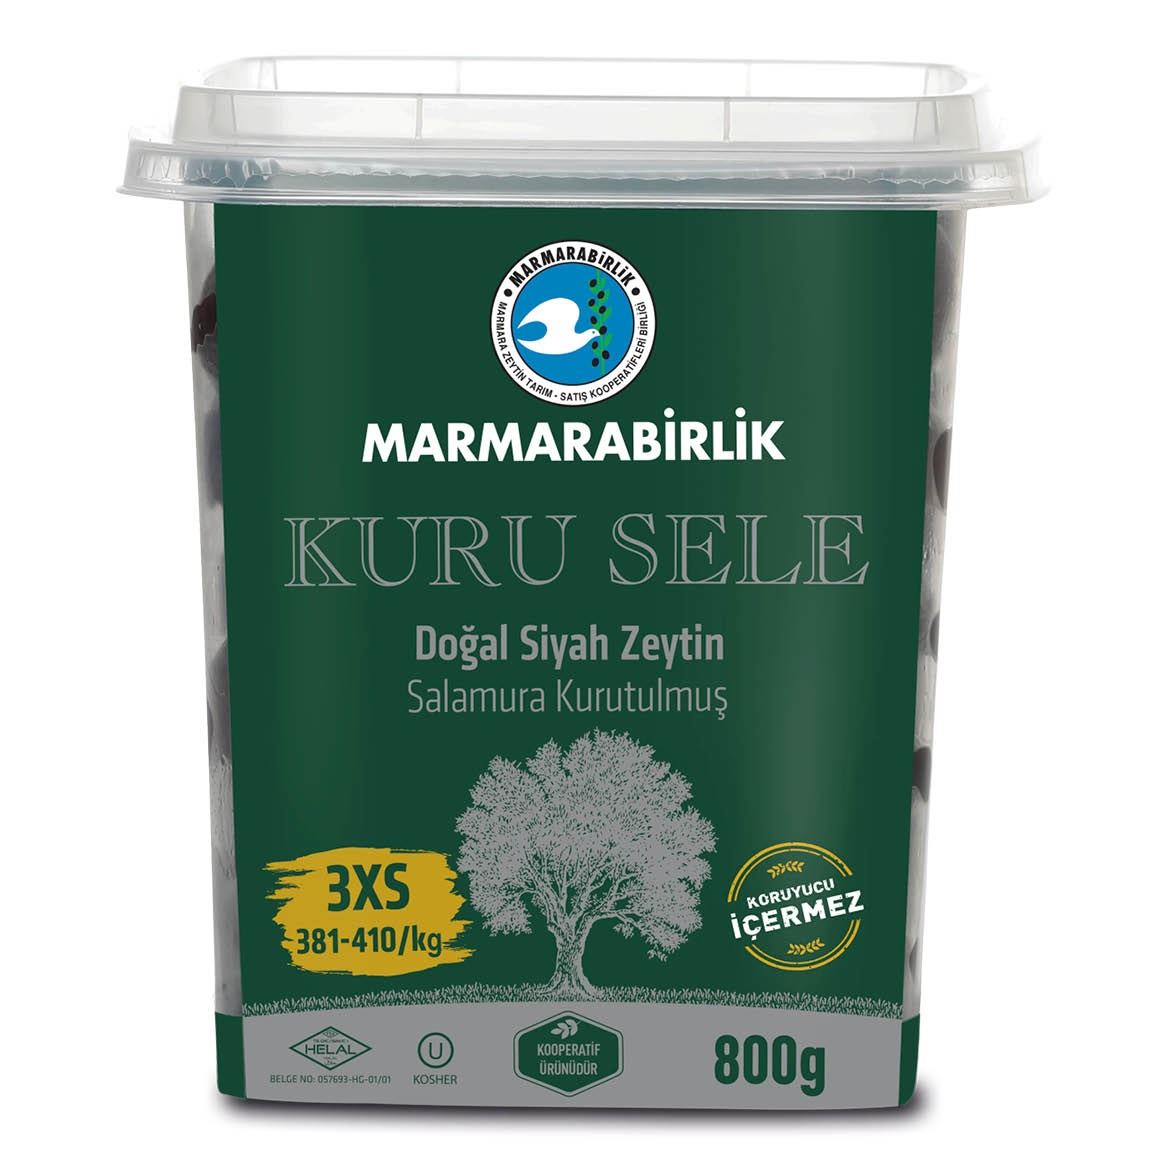 Marmarabirlik Oliven schwarz - Kuru Sele 3XS 800g